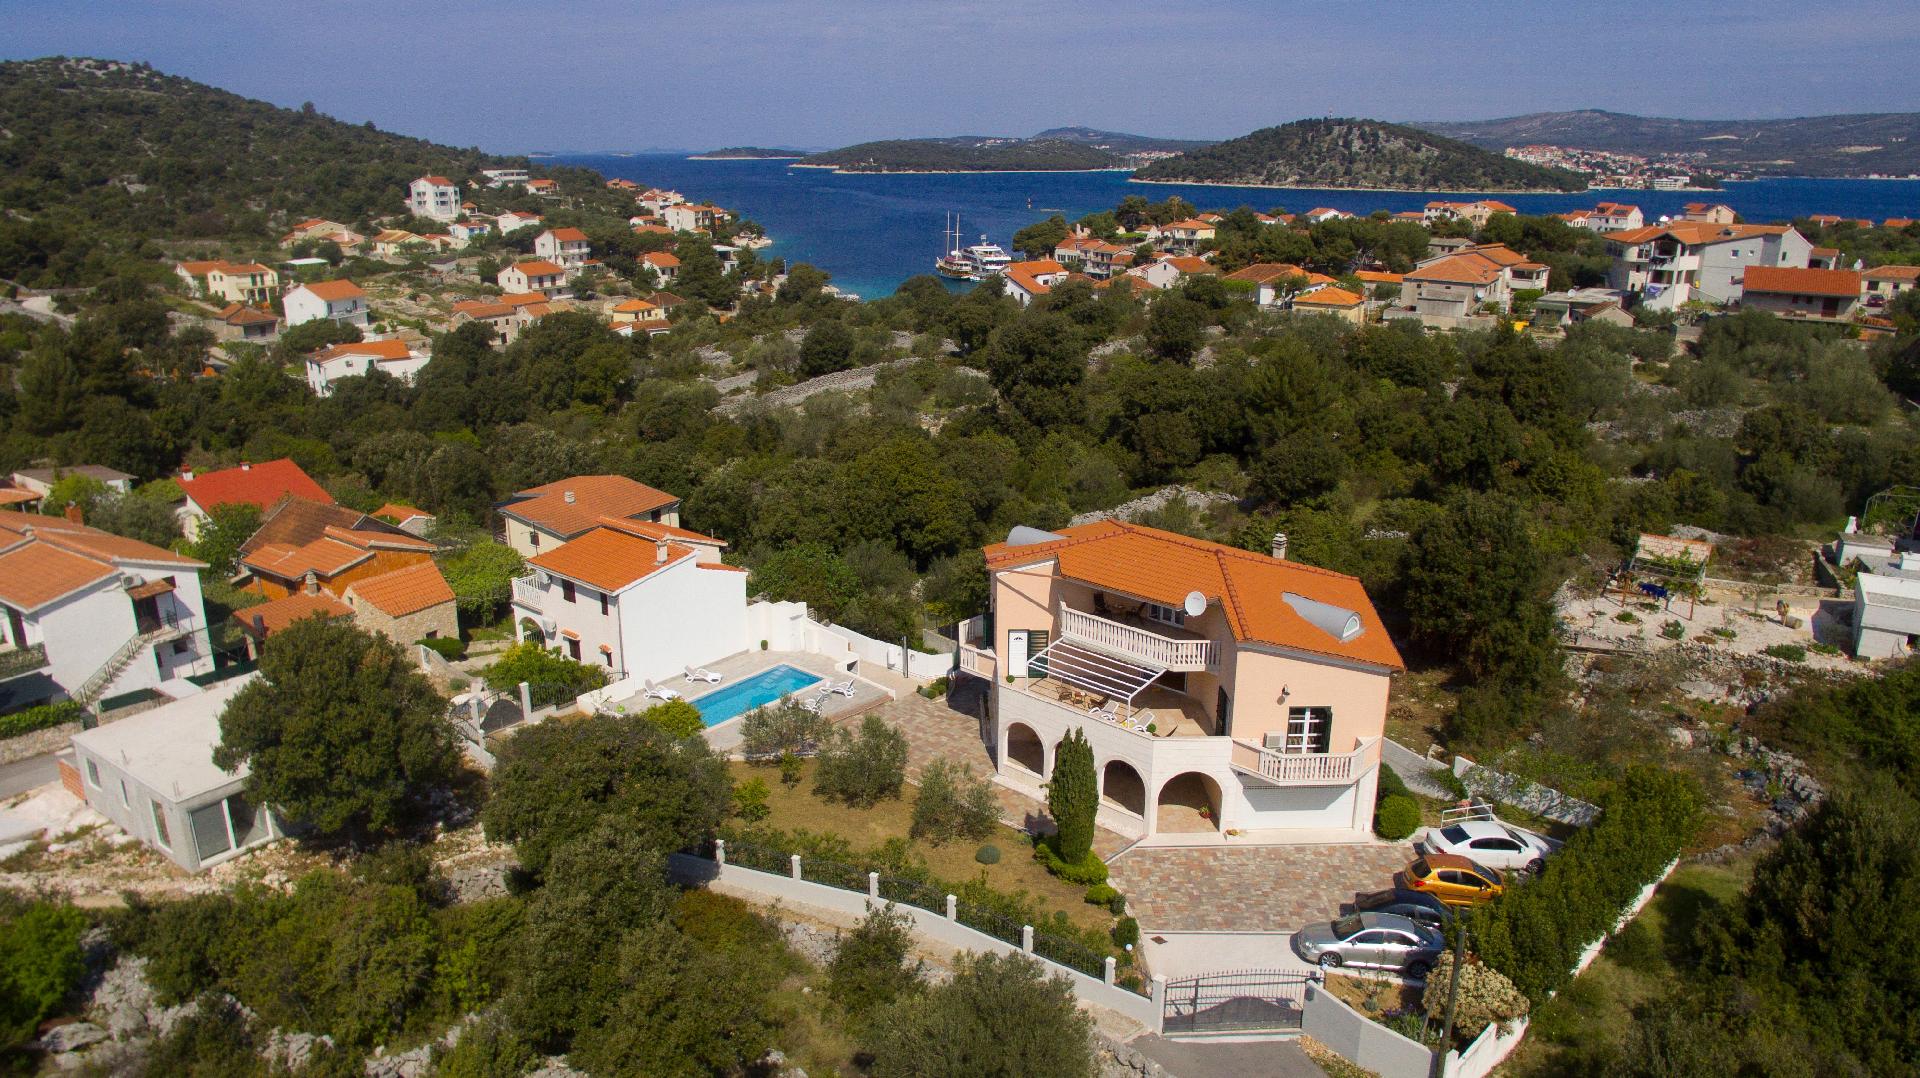 Ferienhaus mit Privatpool für 10 Personen ca. Ferienhaus in Kroatien